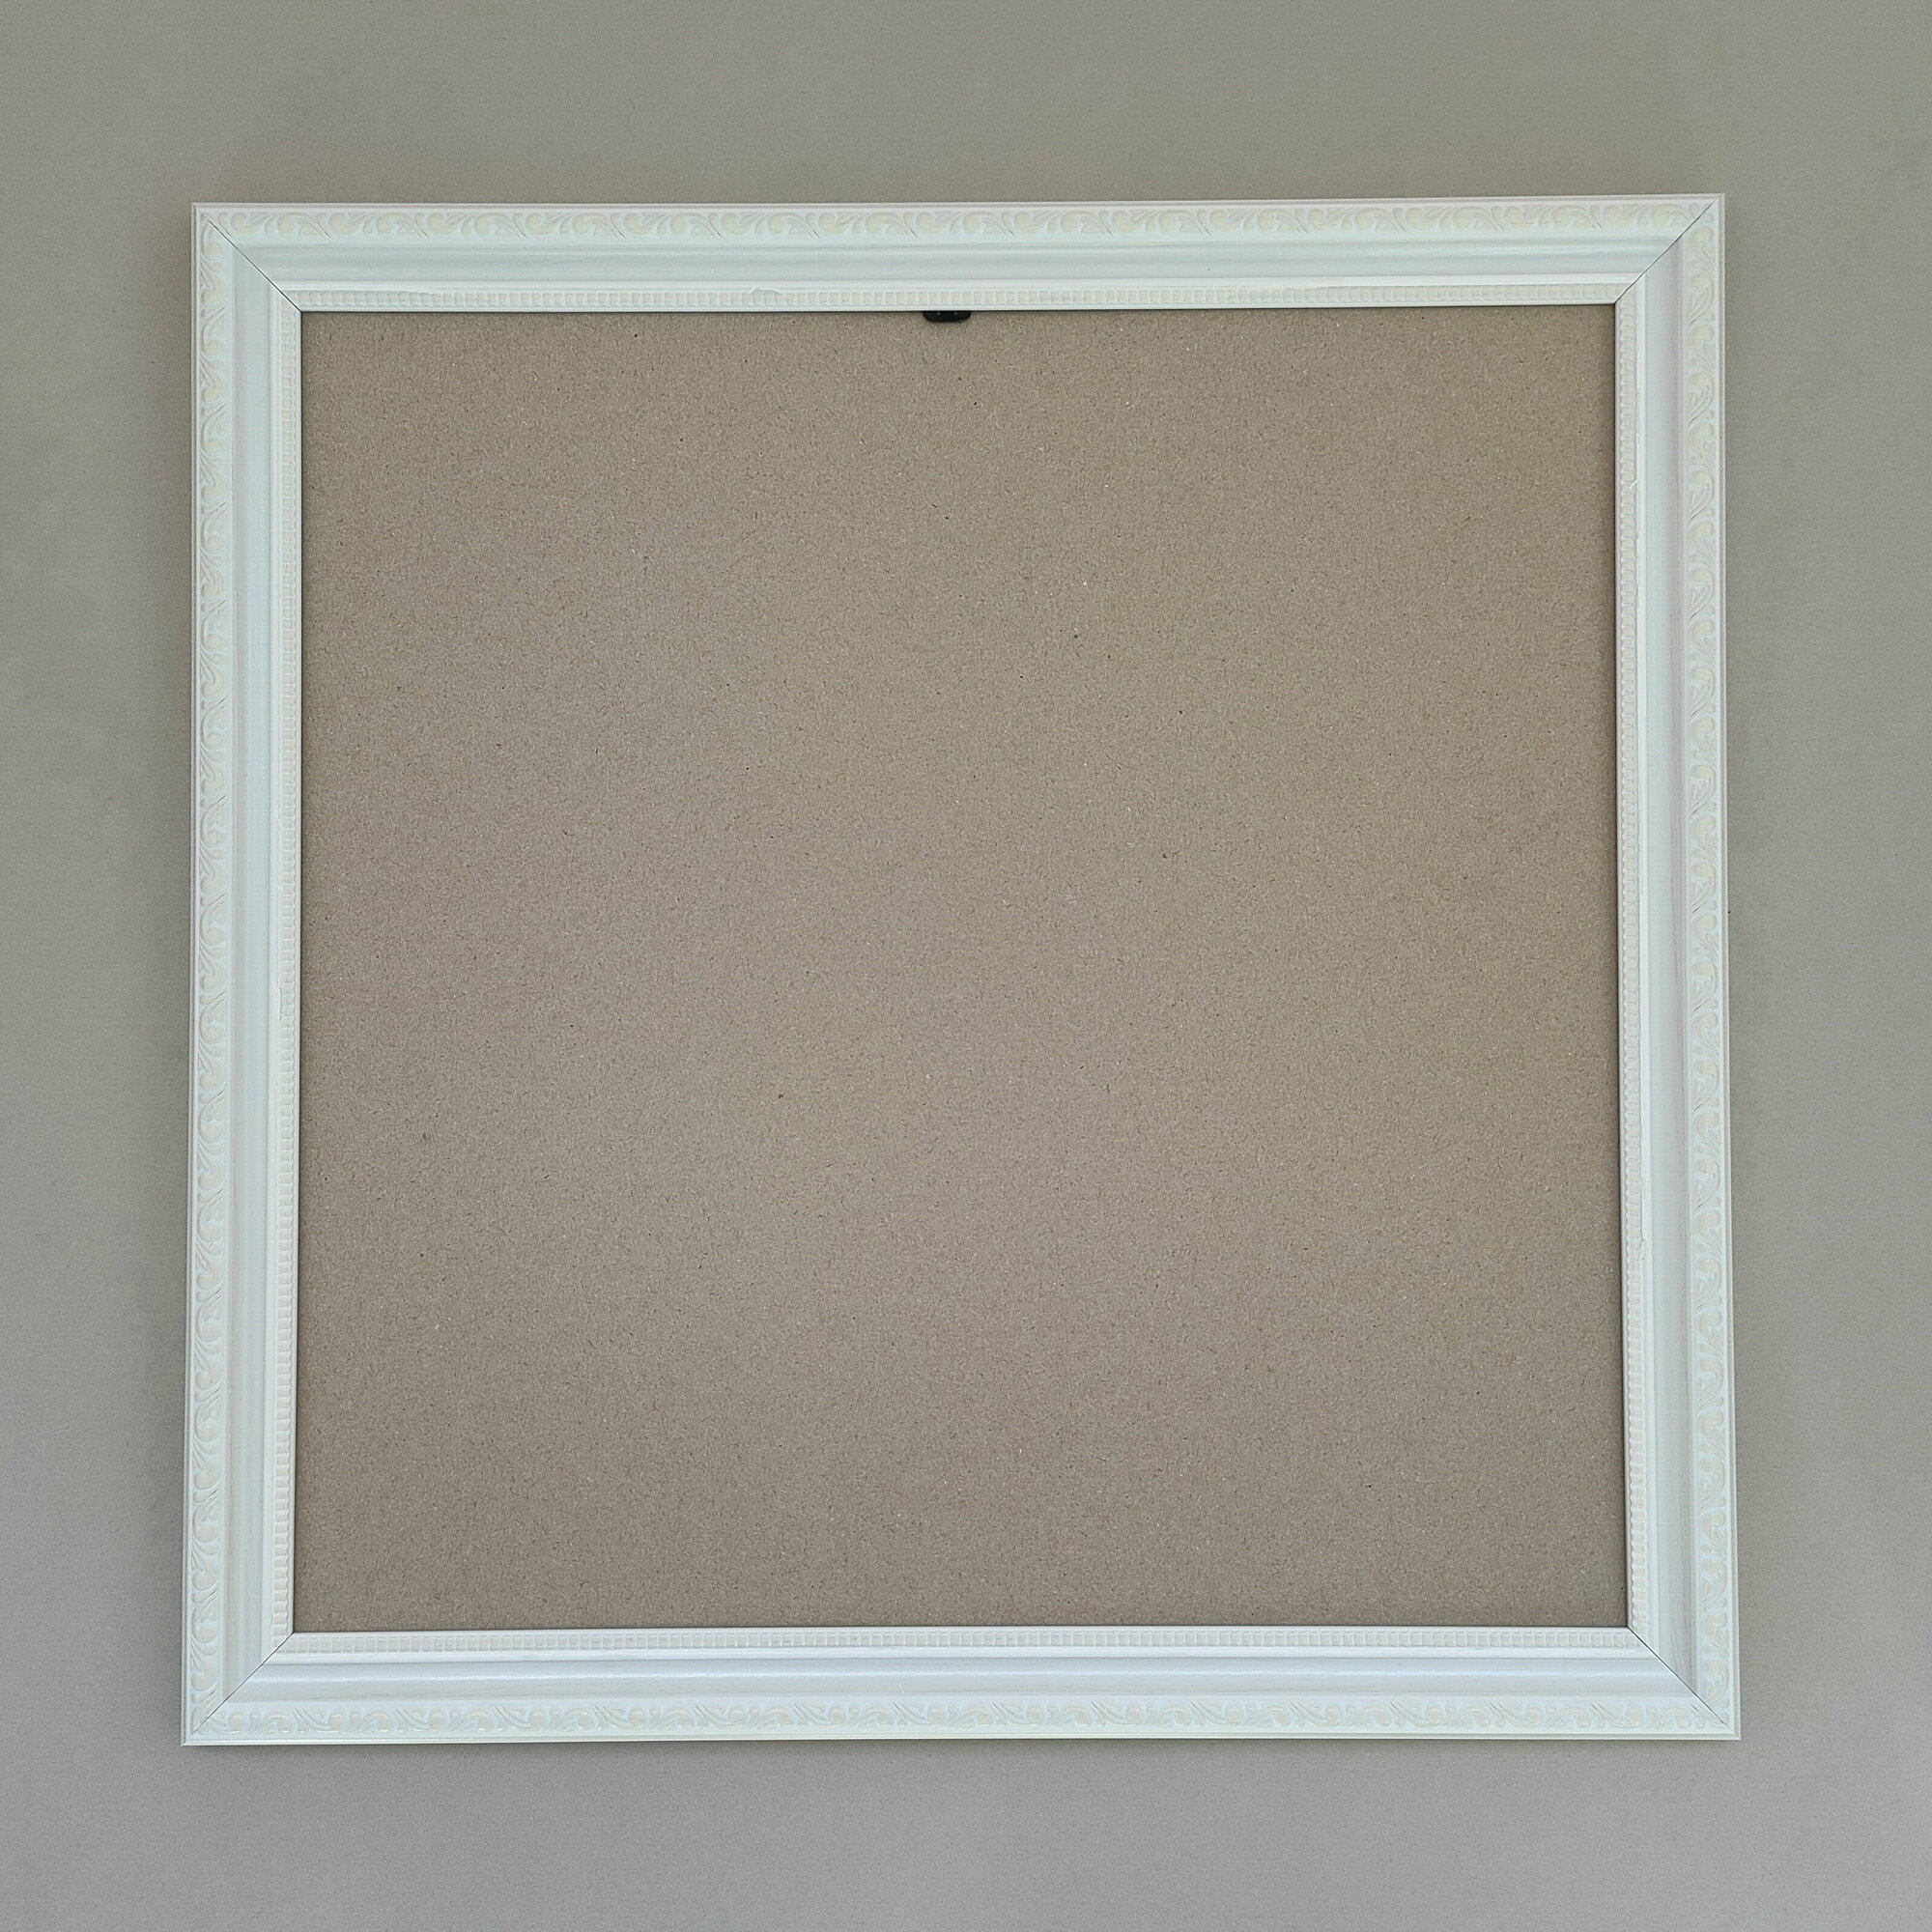 Багетная рама 35x35 см (BR30), пластиковая со стеклом и задником, цвет: белый